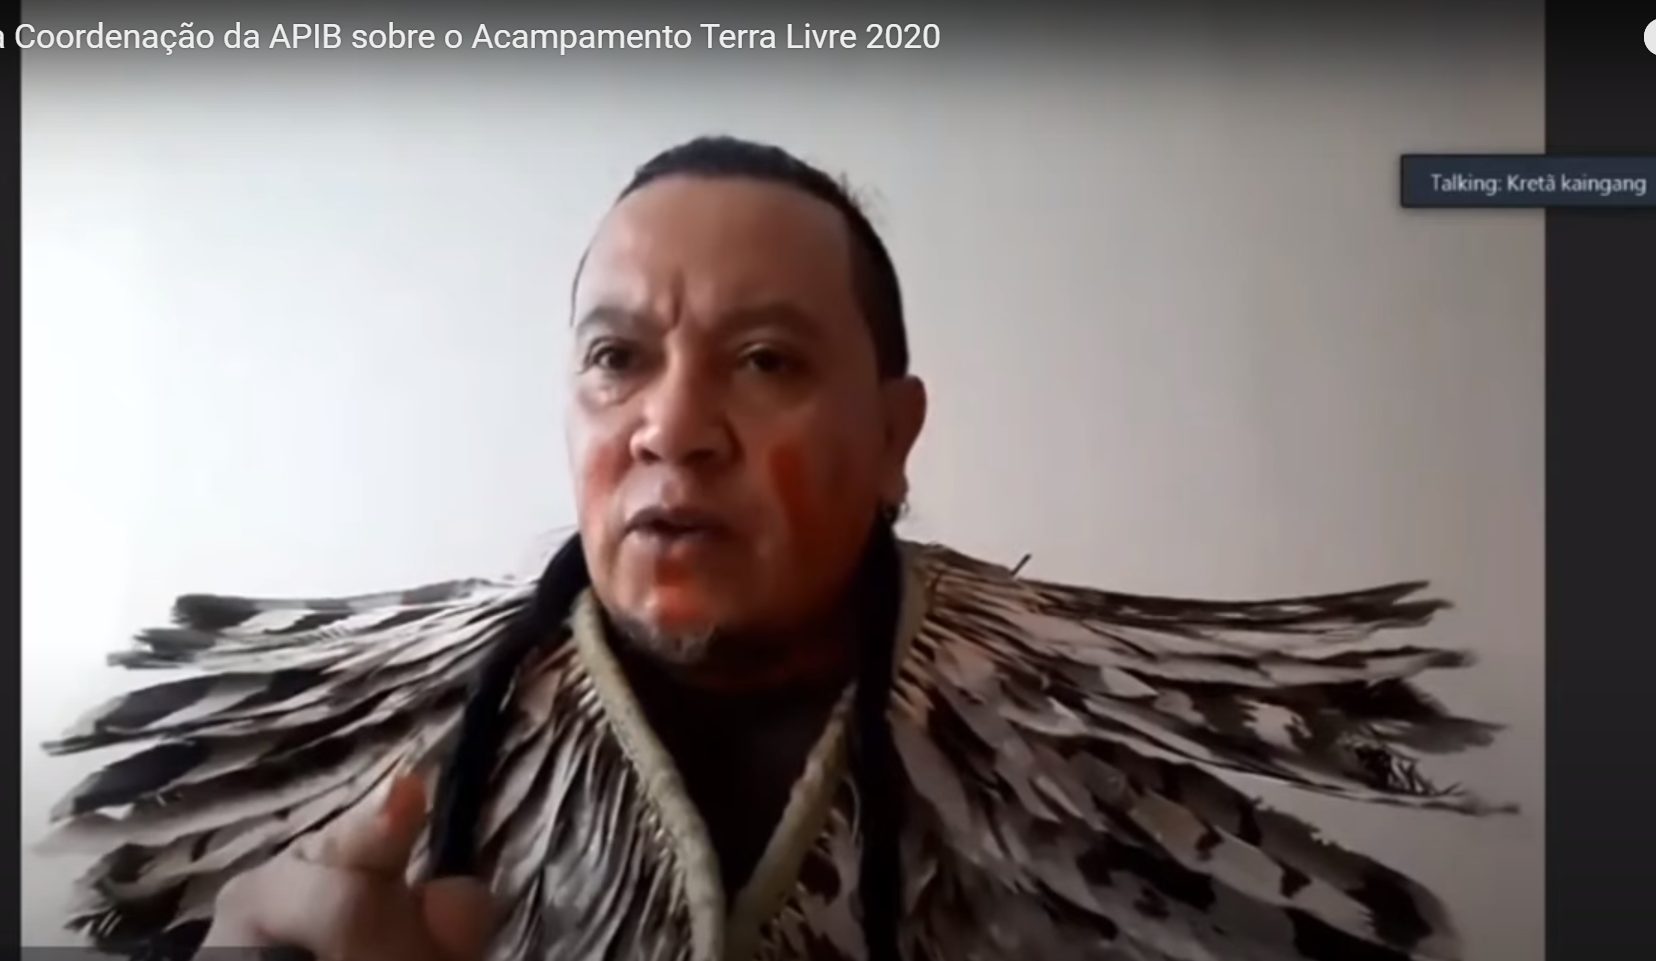 Líder indígena Kretã Kaingang, da Terra Indígena Mangueirinha, no Paraná, na reunião virtual dos coordenadores da Apib: “Para cada novo ataque, criamos uma nova estratégia de luta” (Foto: Reprodução/Youtube)